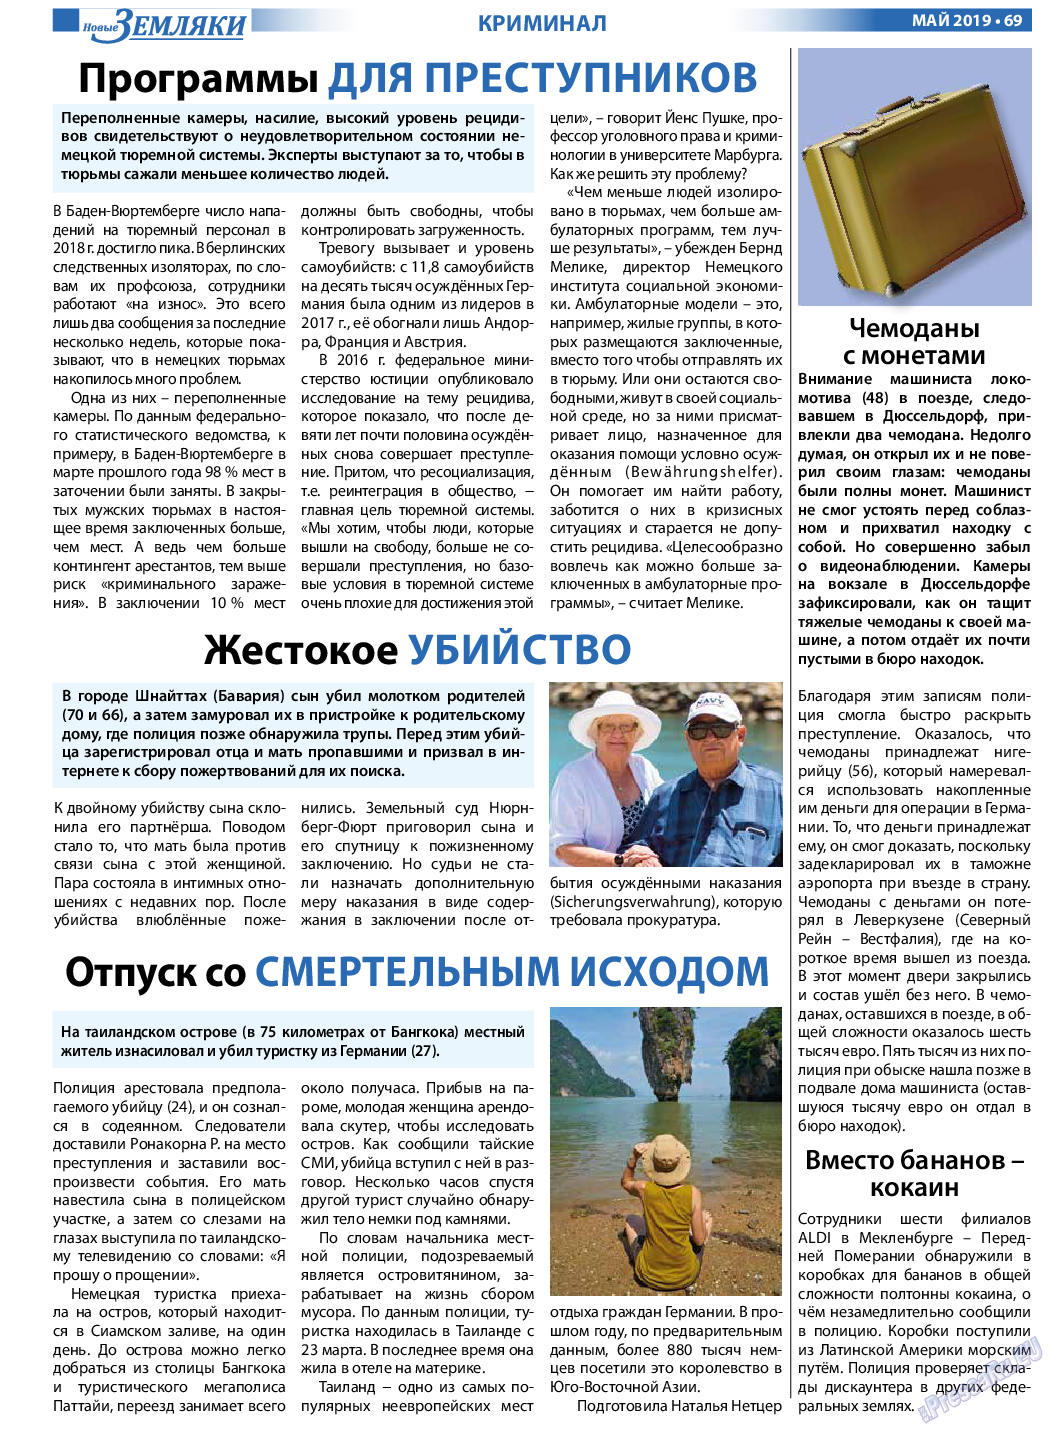 Новые Земляки, газета. 2019 №5 стр.69